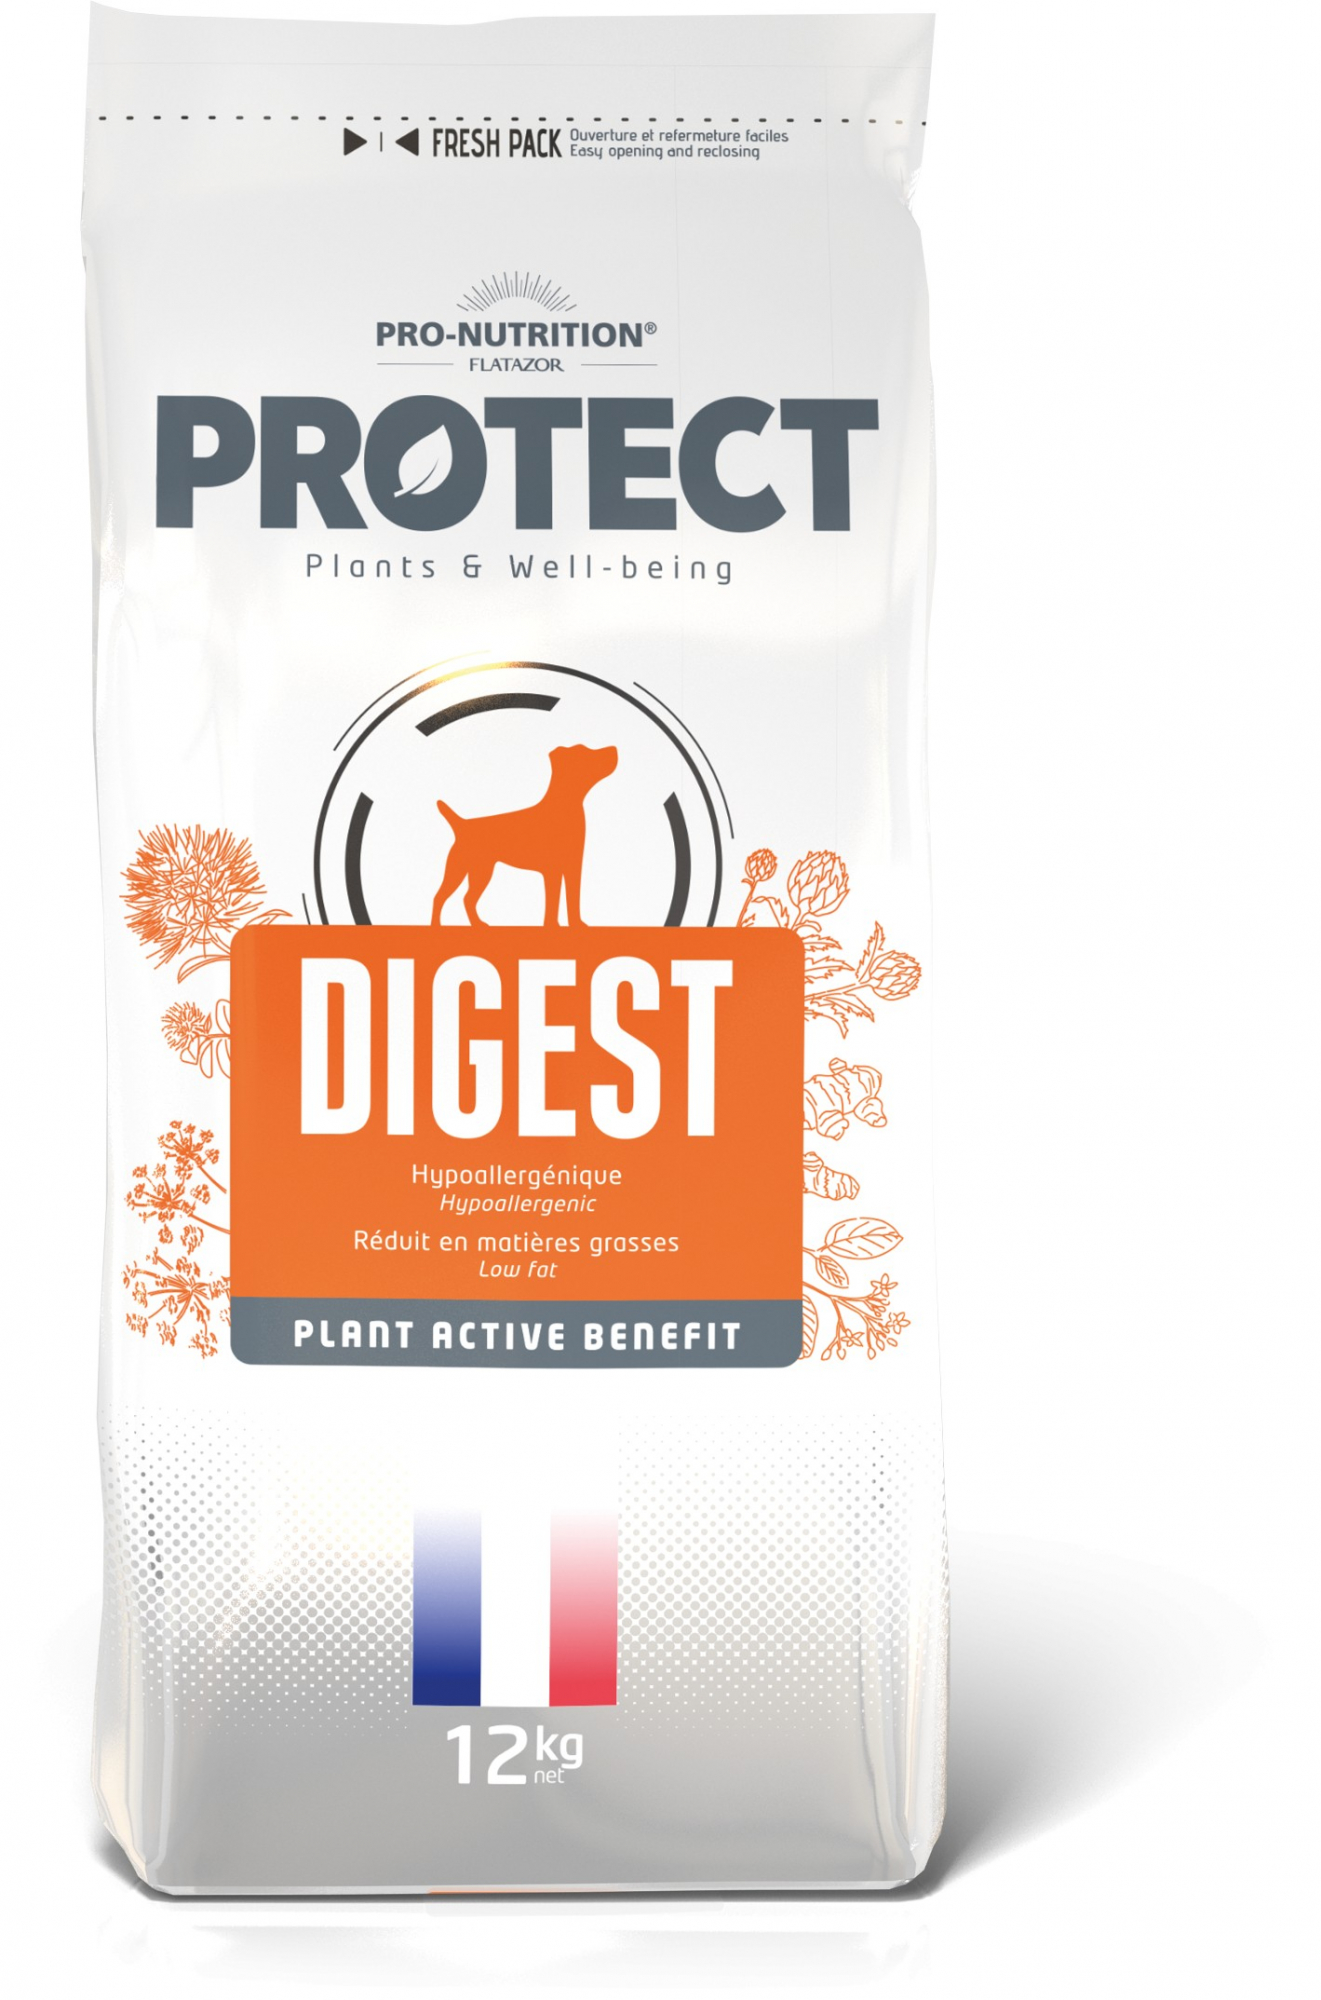 PRO-NUTRITION Flatazor PROTECT Digest für empfindliche erwachsene Hunde